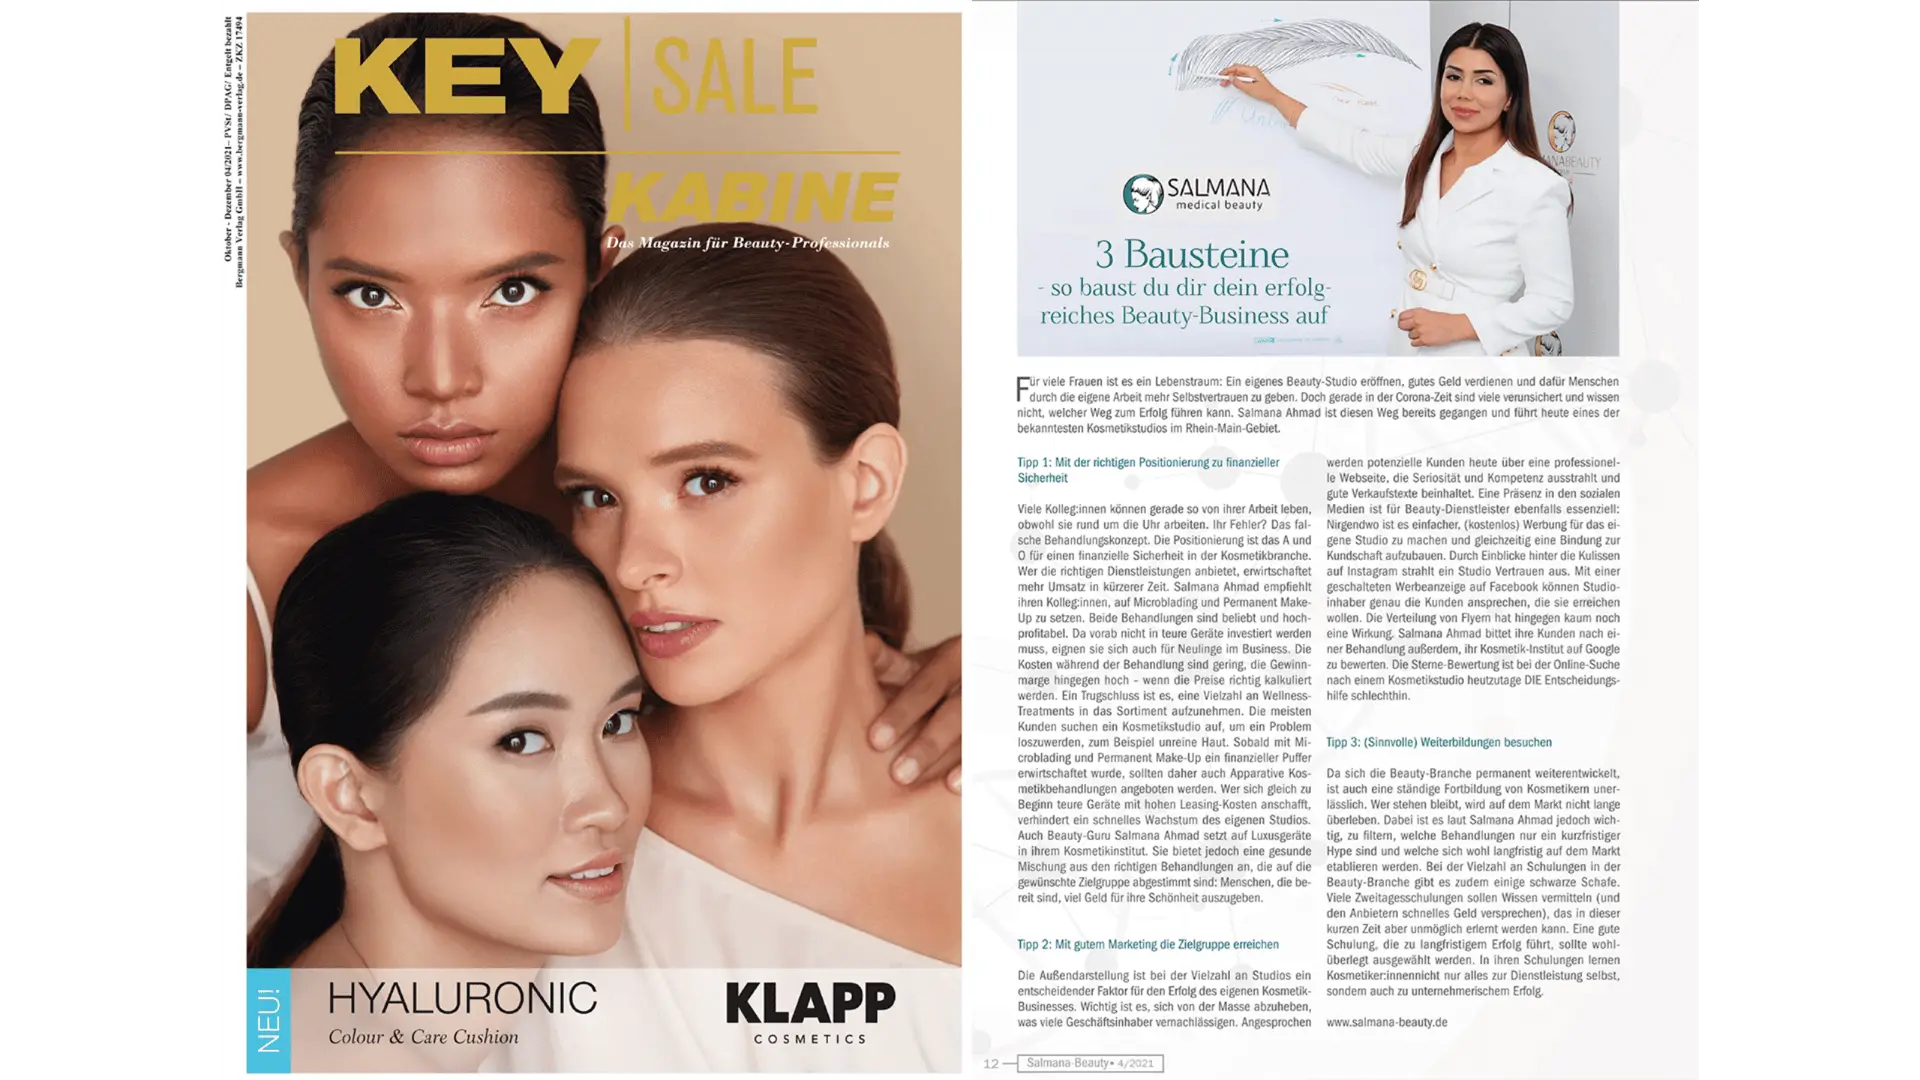 Medienbericht über Salmana Ahmad in der Zeitschrift "Key Sale Kabine" beschreibt die drei Bausteine für ein erfolgreiches Beauty-Business